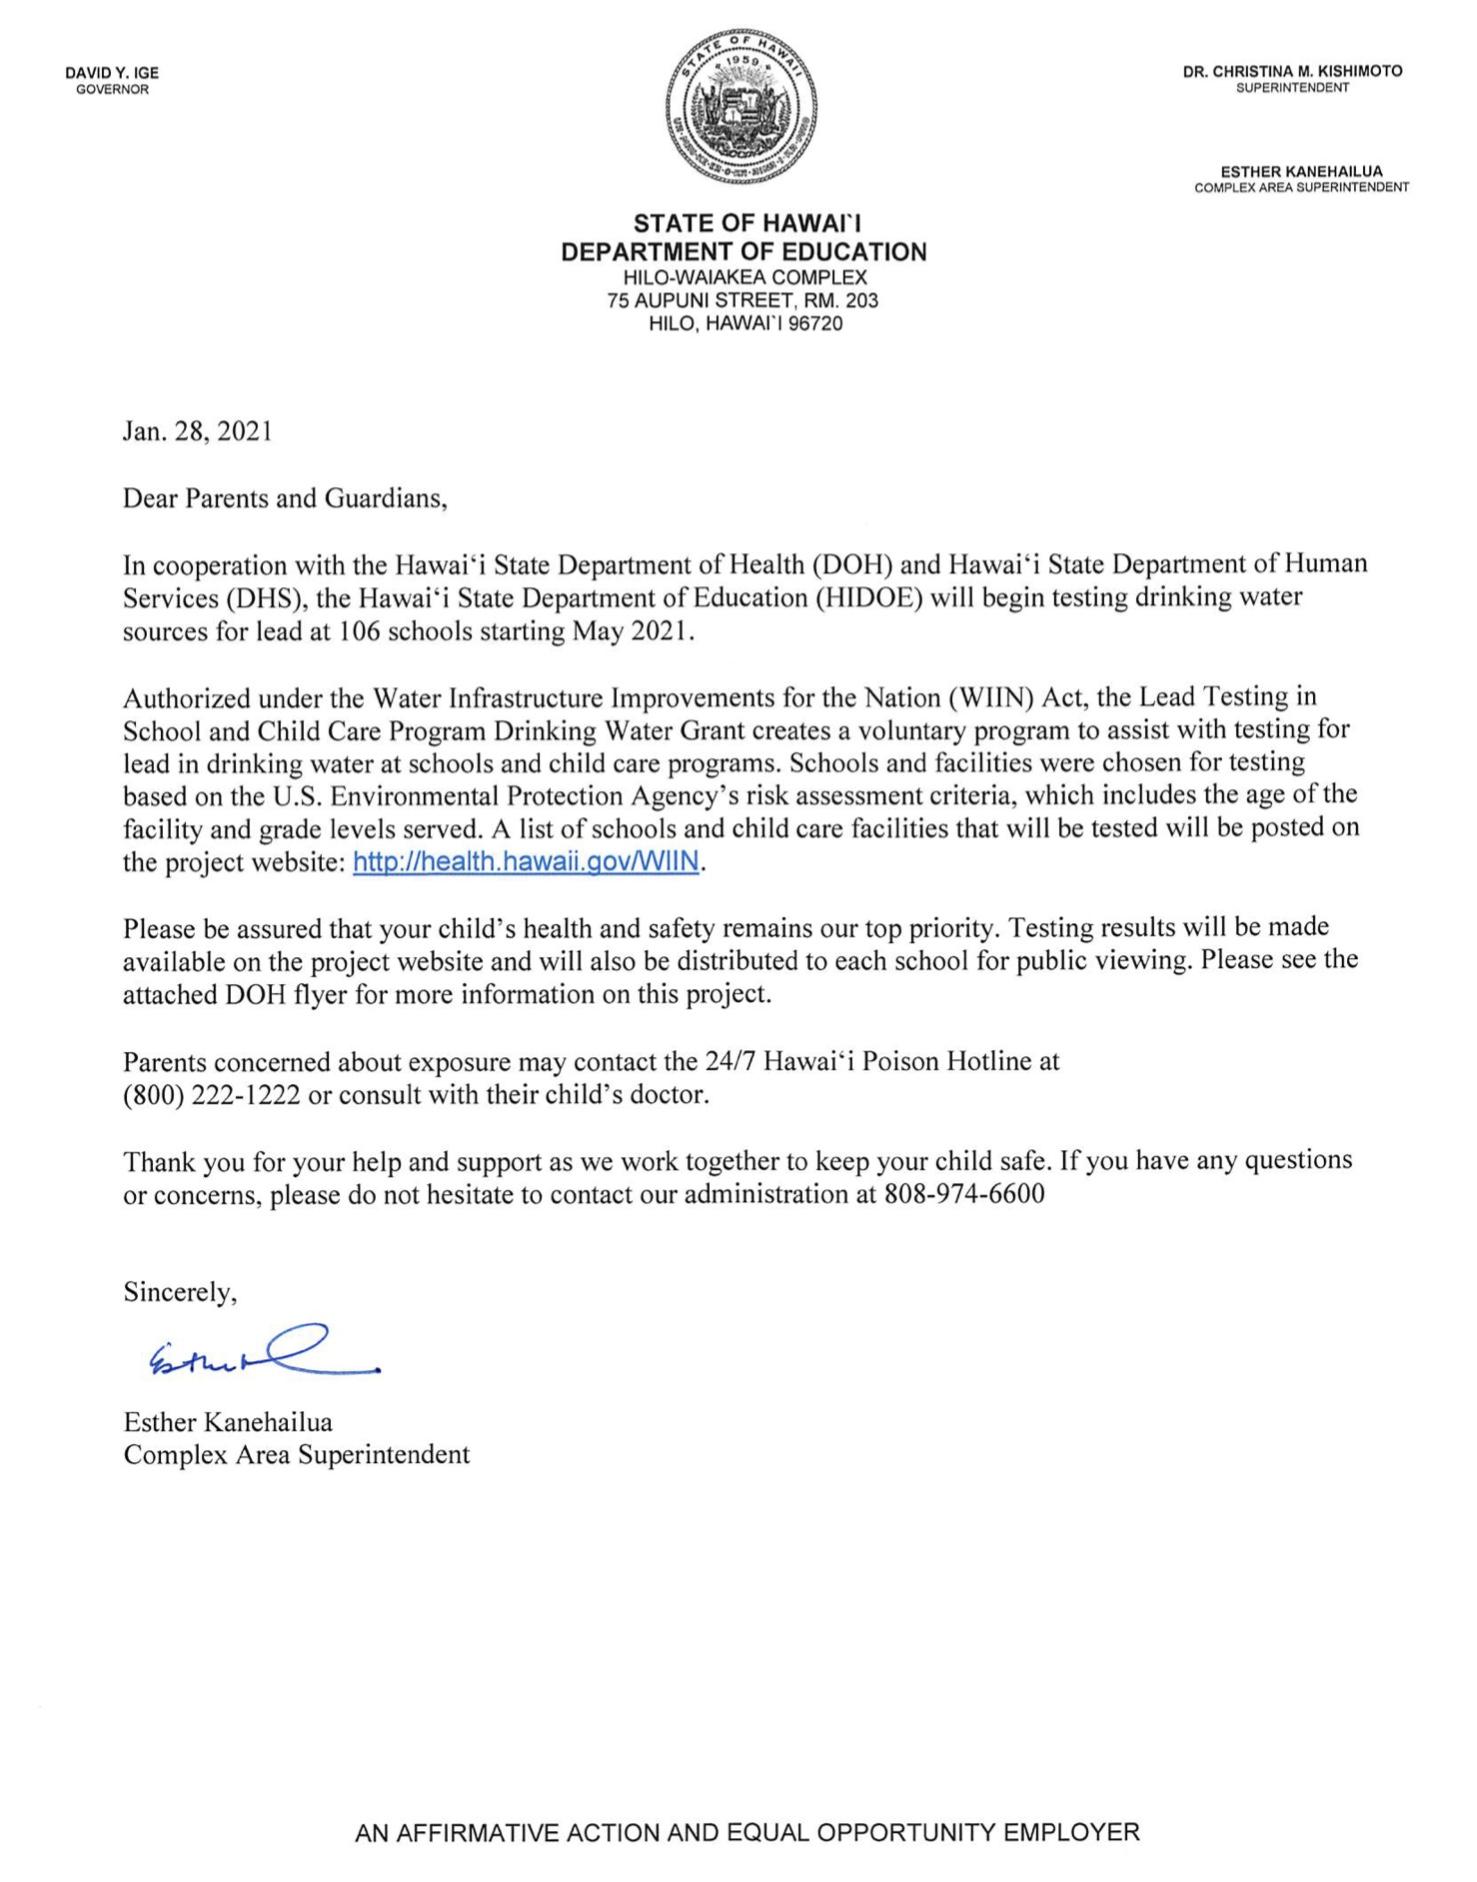 Superintendent Letter